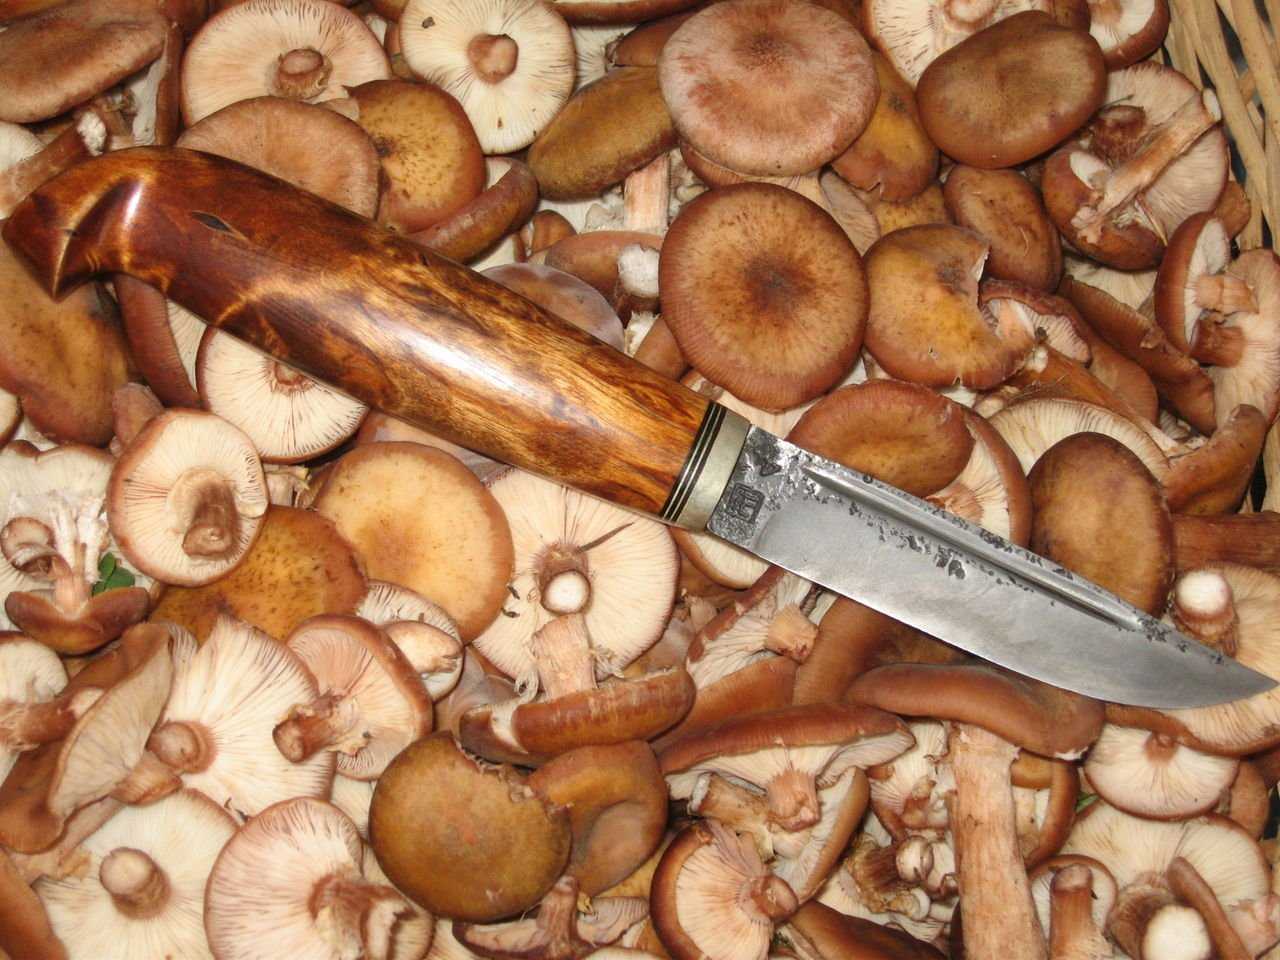 – термическая обработка белых свежих грибов перед приготовлением: способы подготовки после сбора к жарке, заморозке